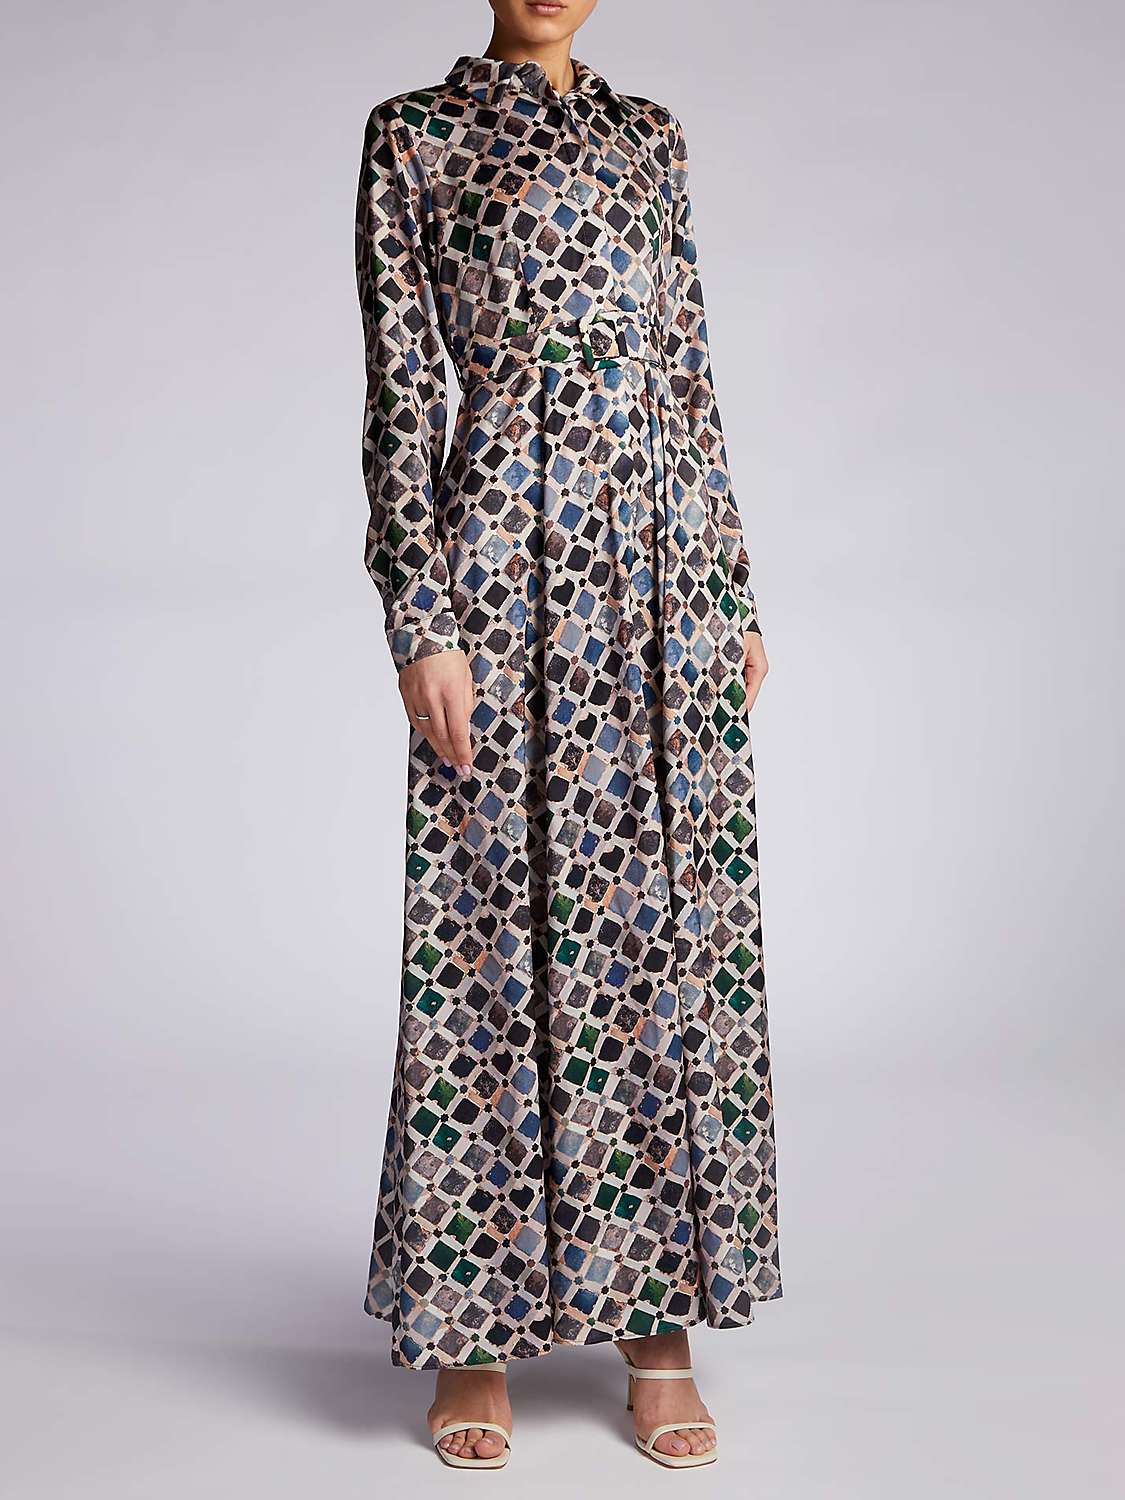 Aab Mosaic Maxi Dress, Multi at John Lewis & Partners